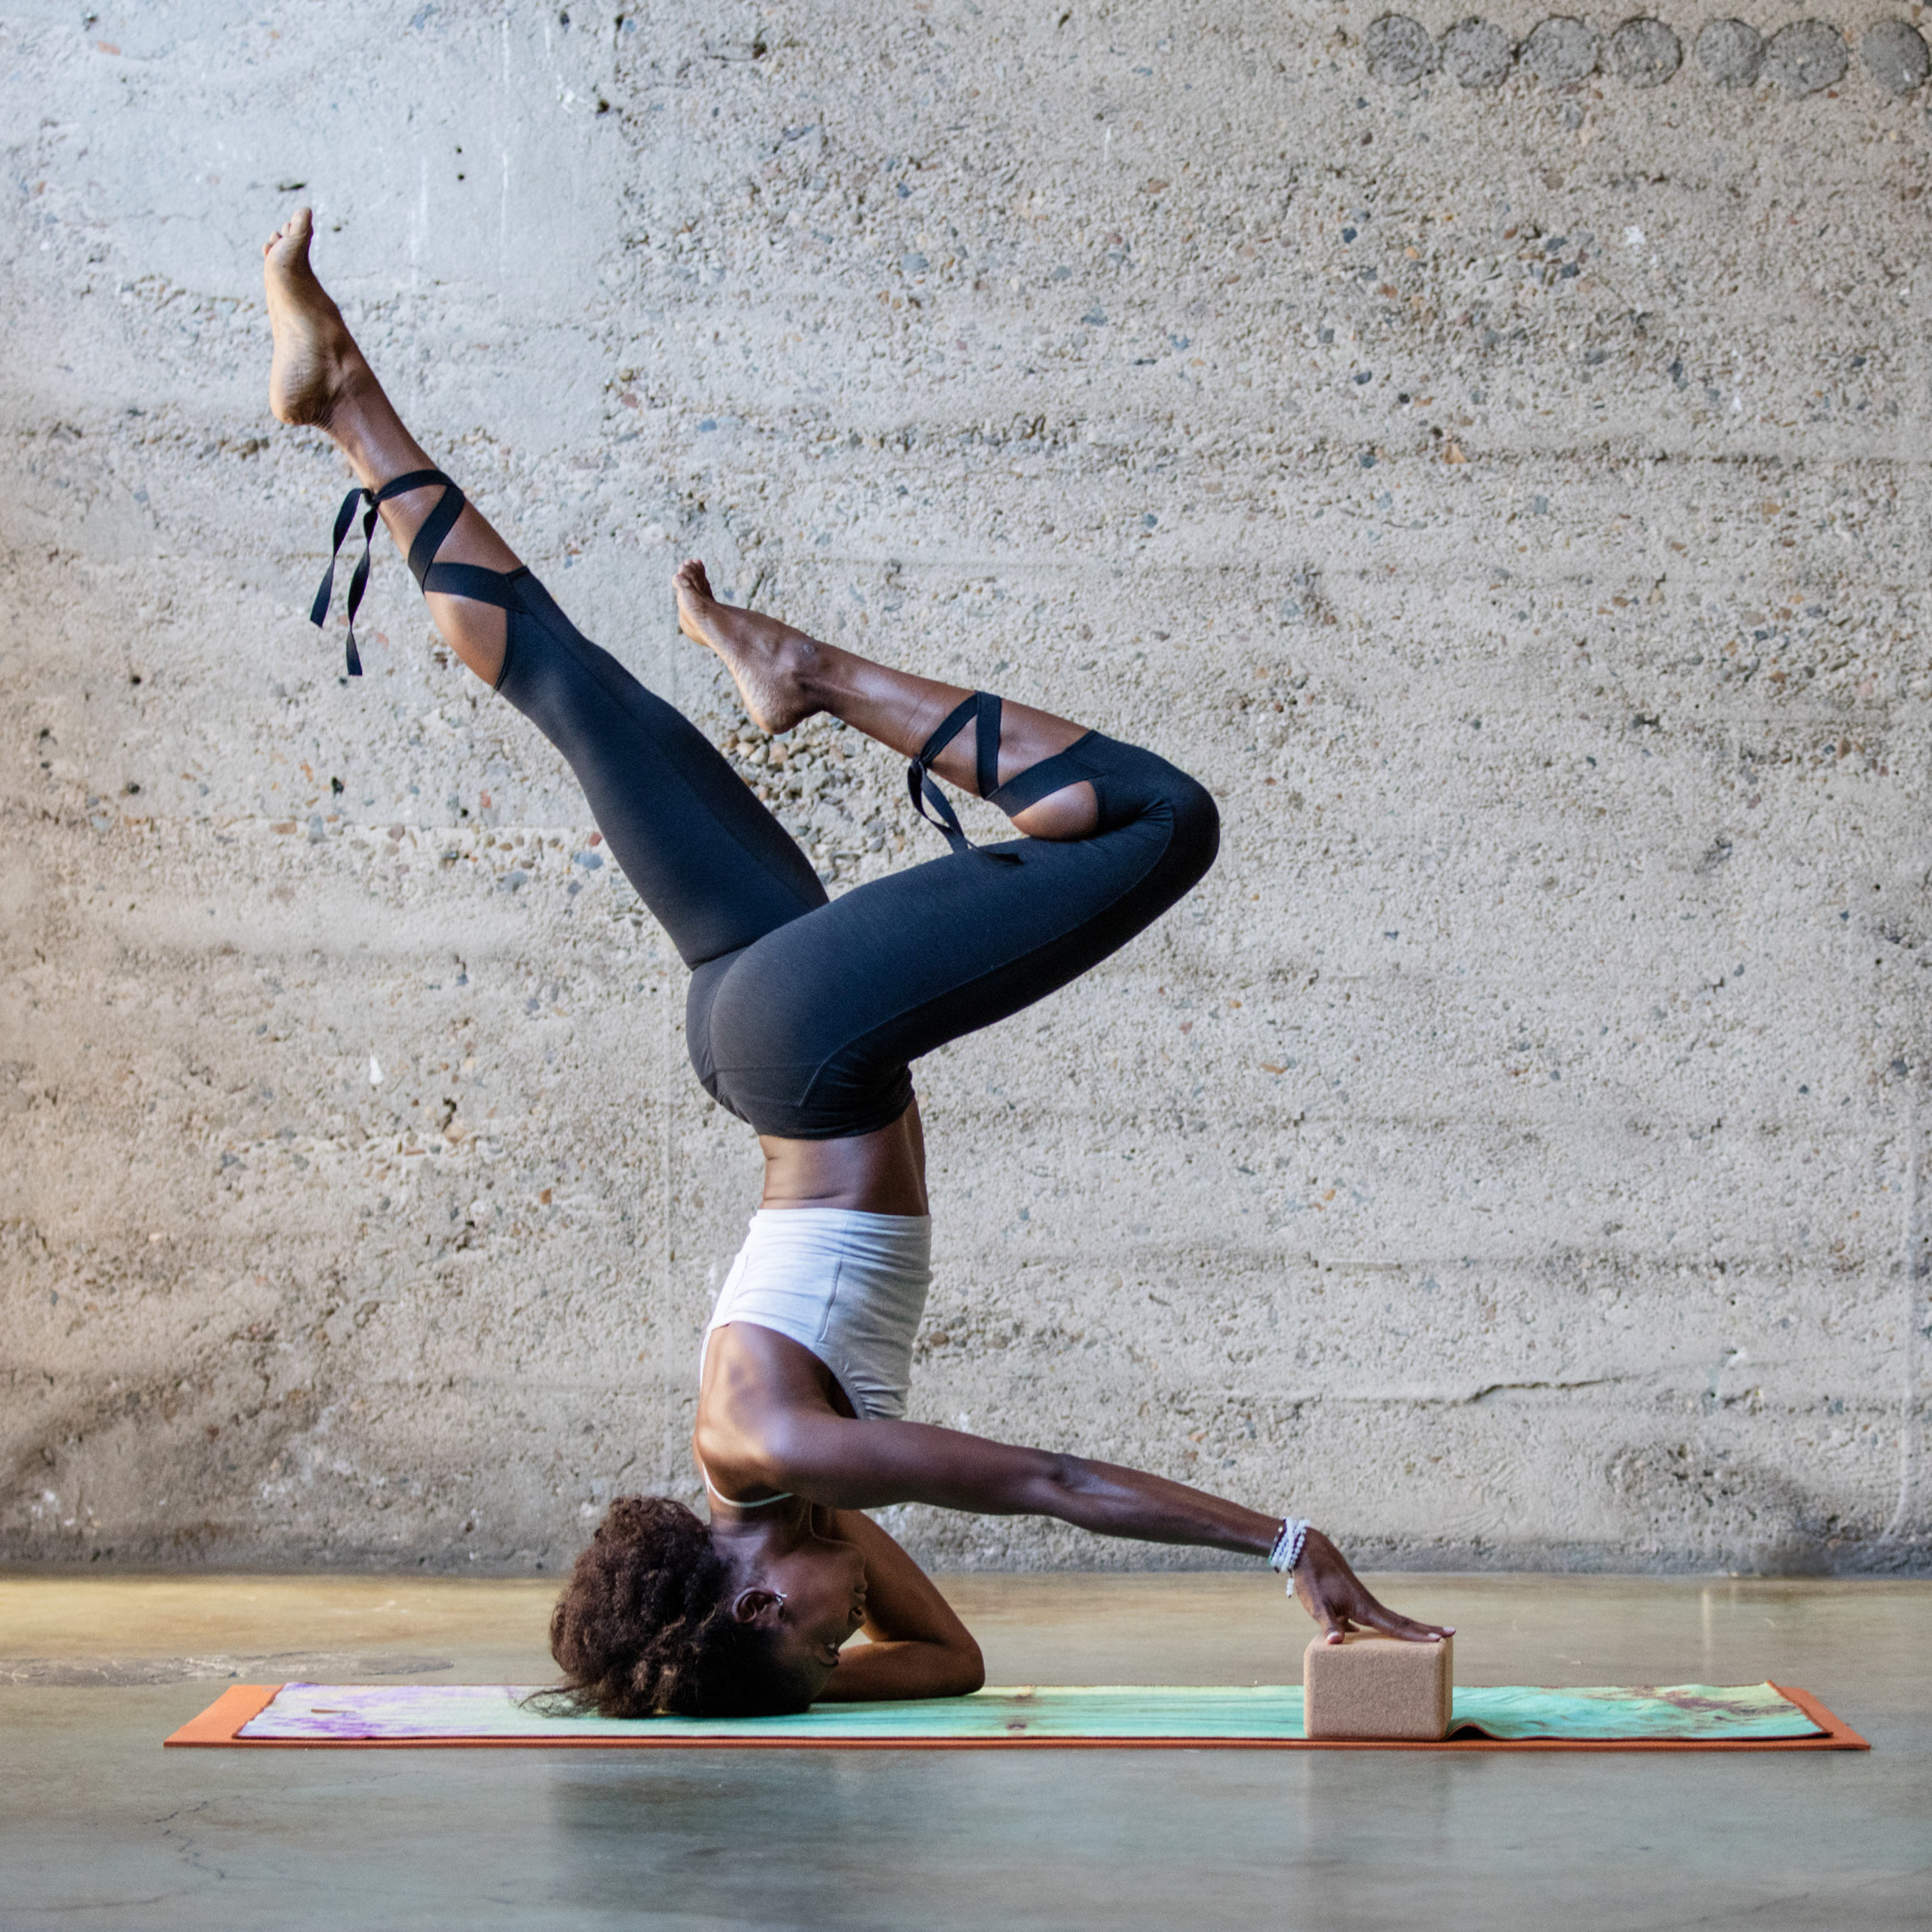 MANDUKA(R) Announces First-Ever 'Made for Yoga' Apparel Line